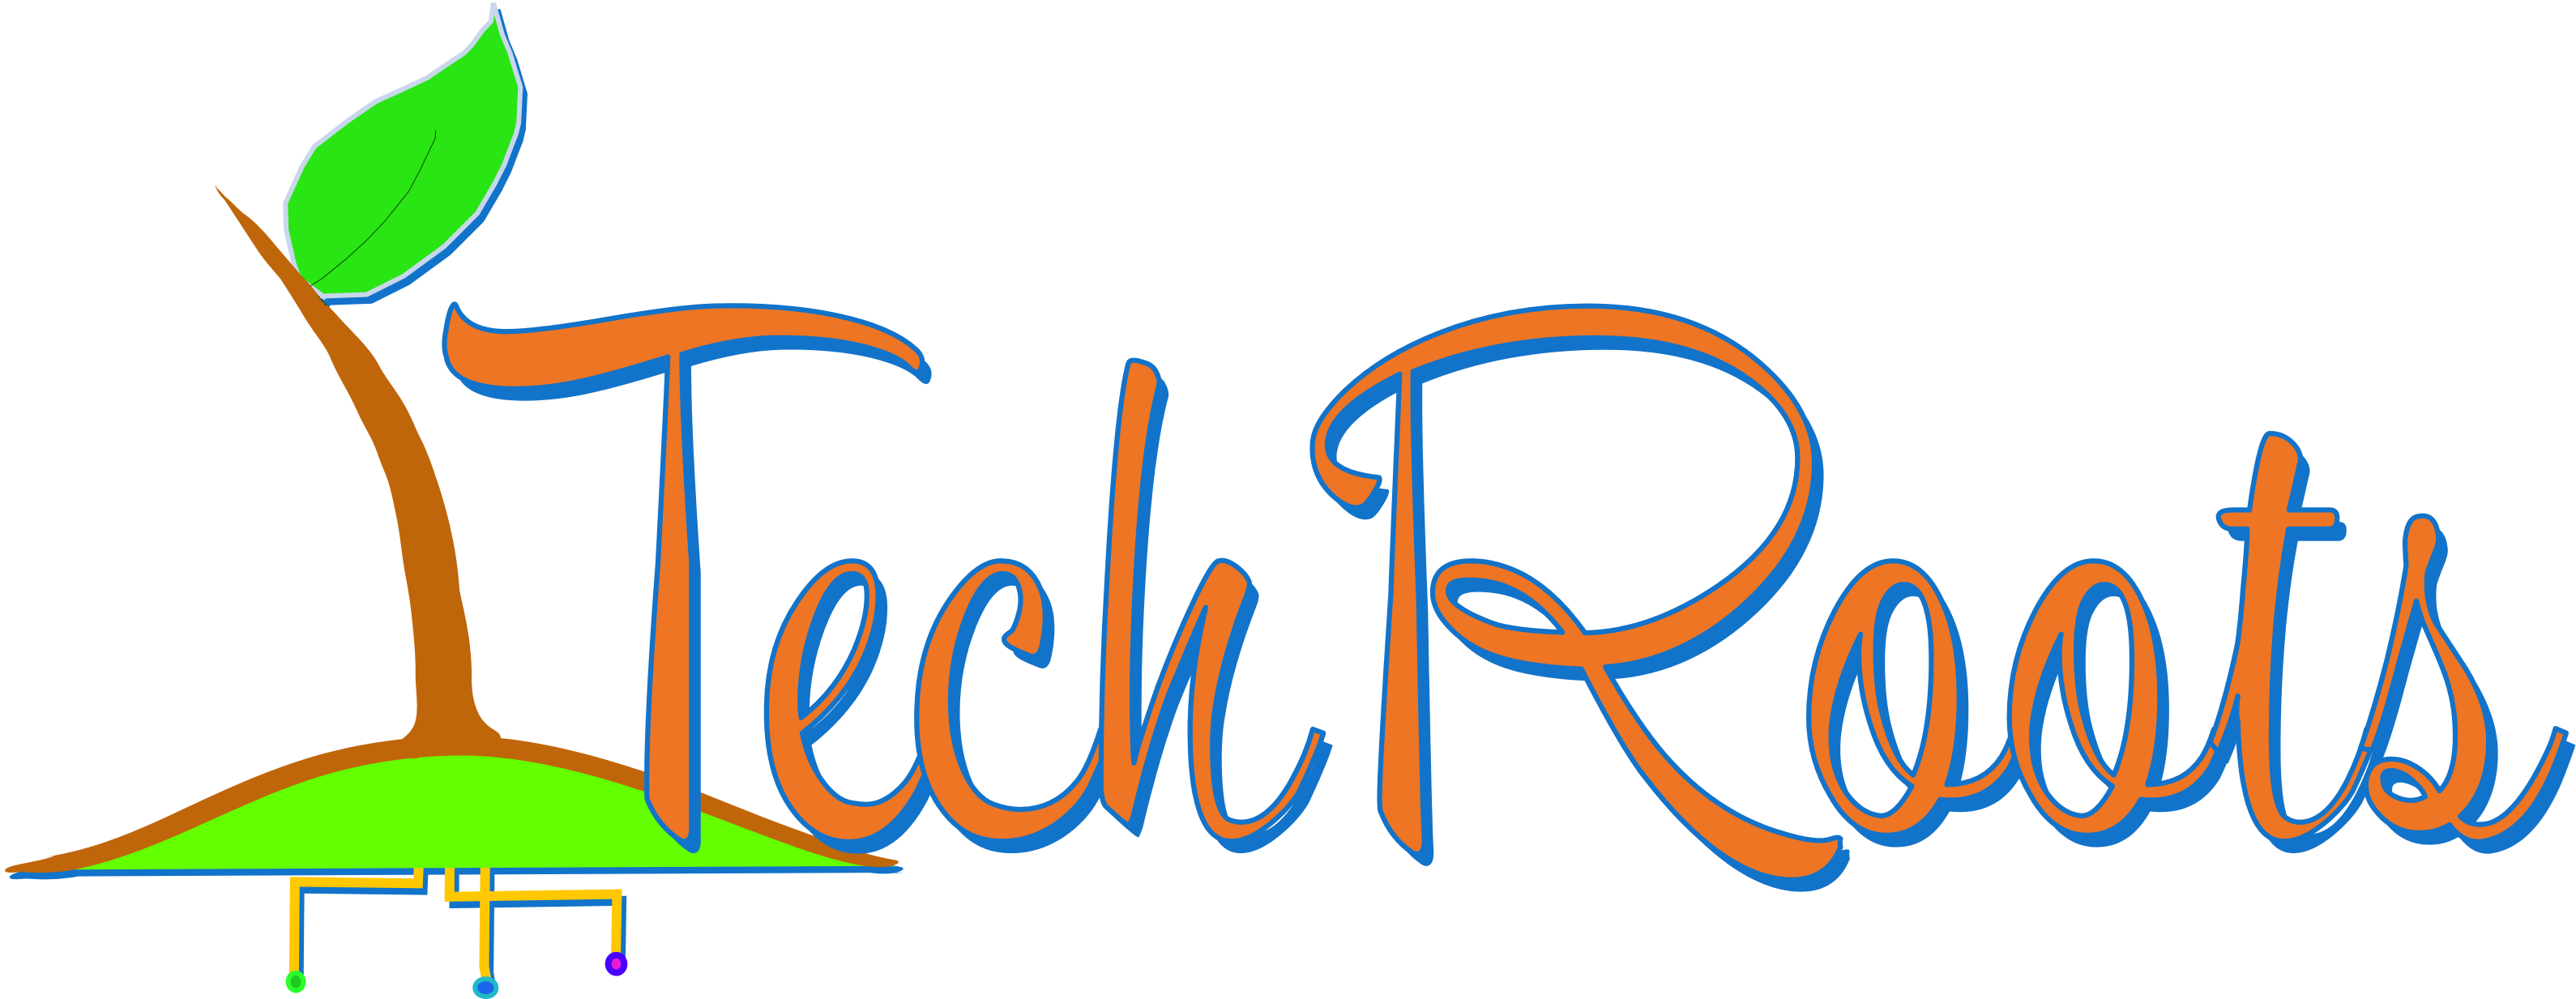 Techroots Logo